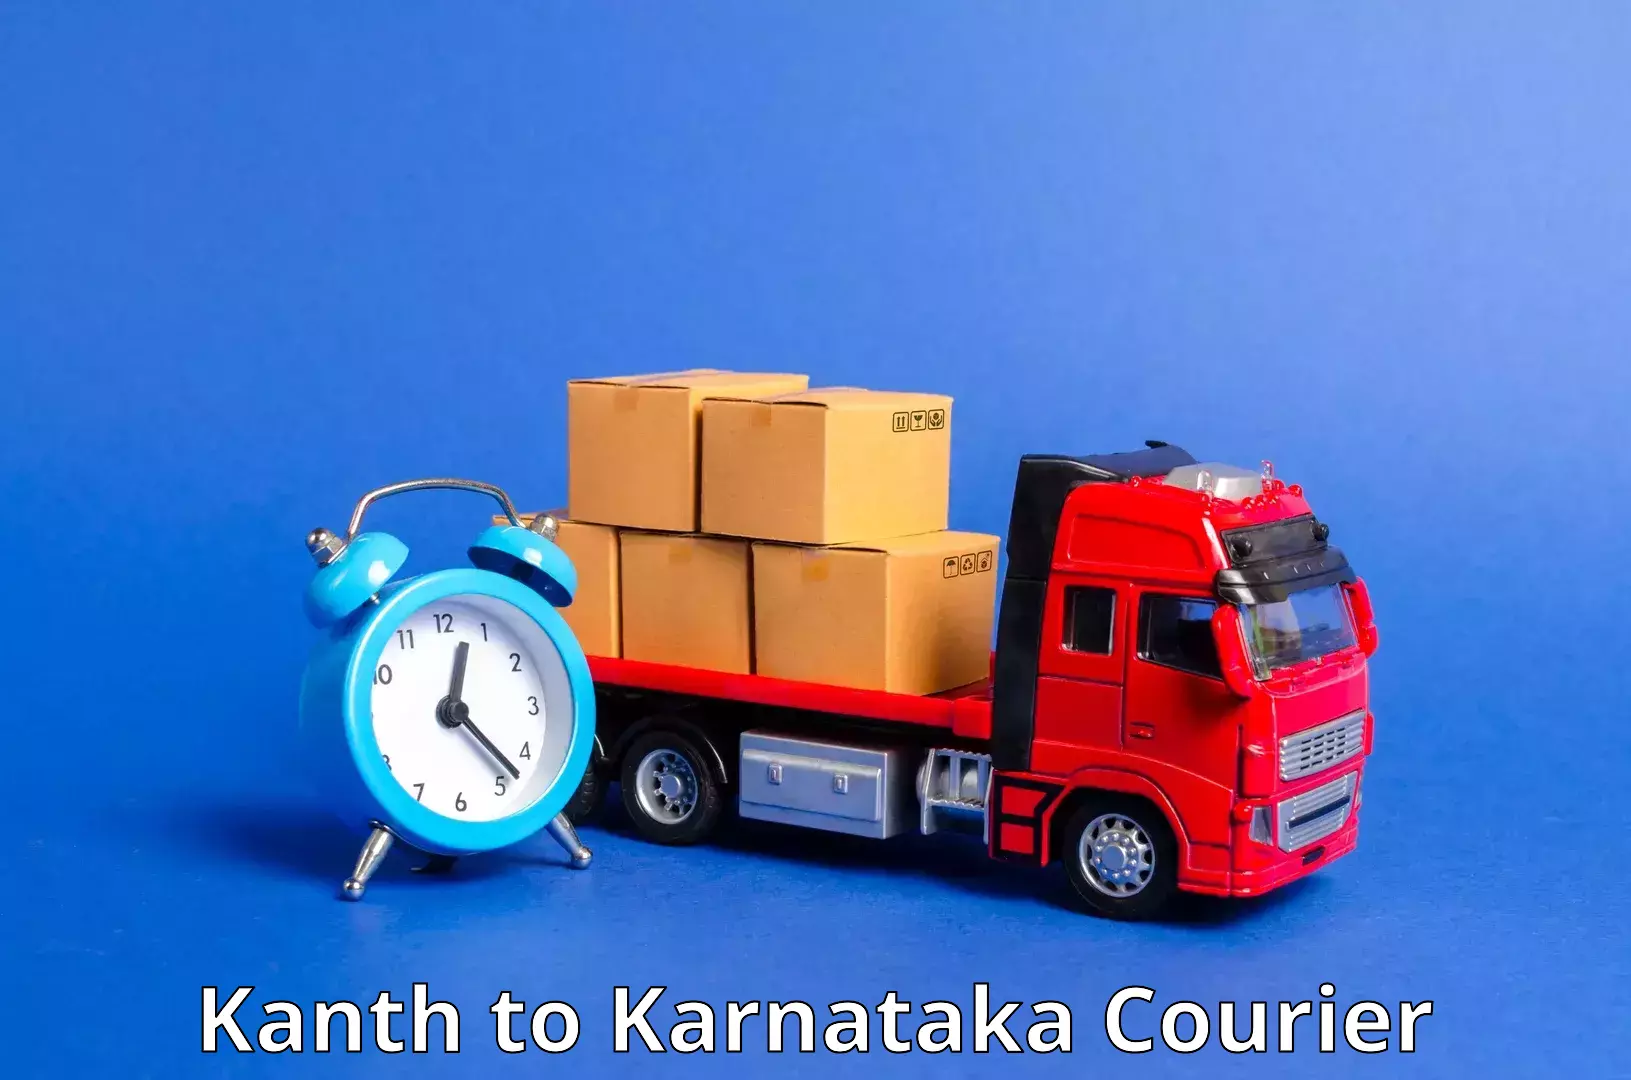 Express package services Kanth to Karnataka